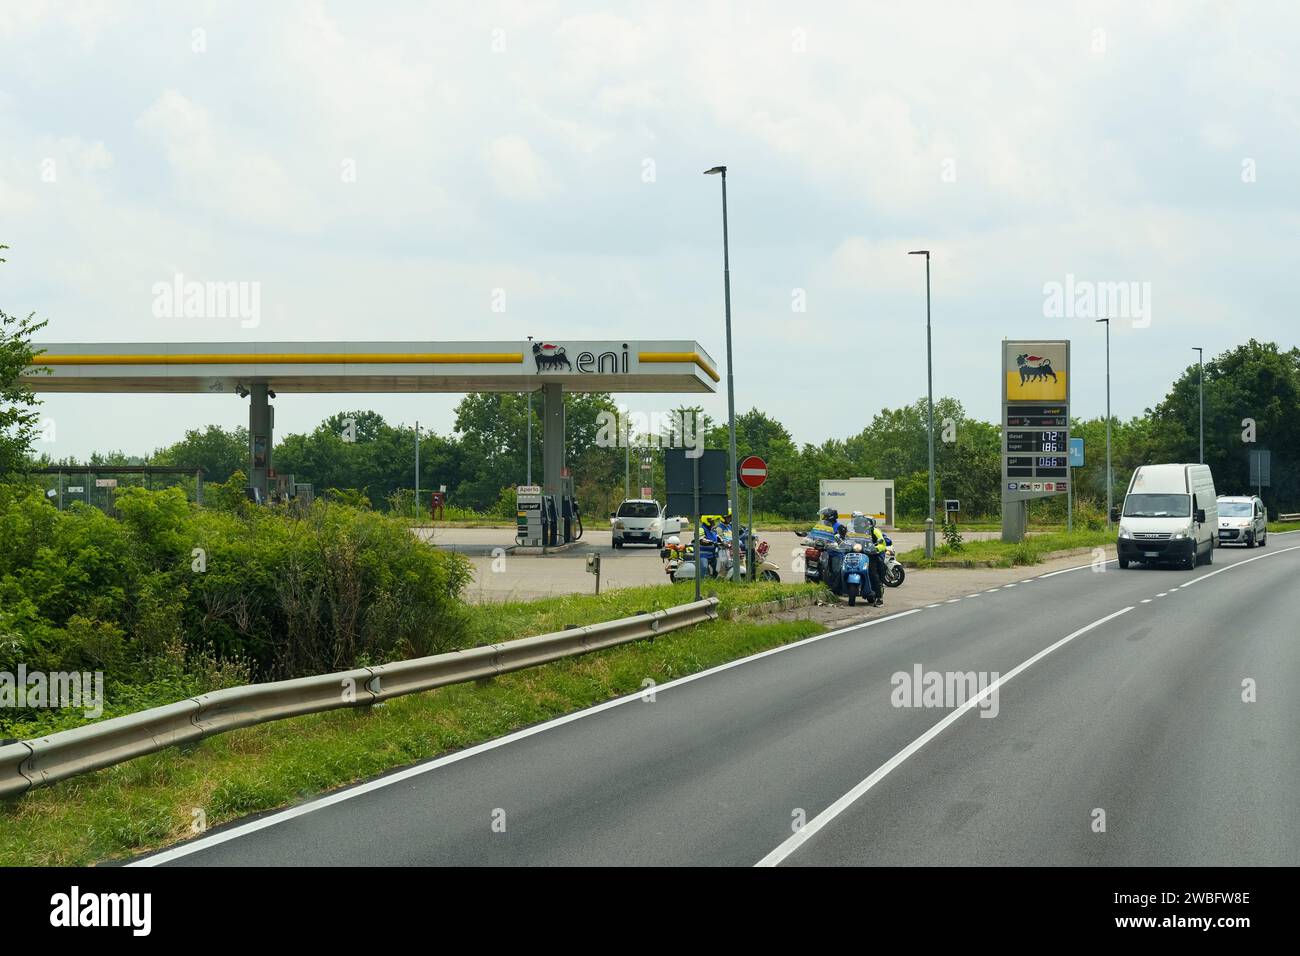 Parma, Italia - 14 giugno 2023: Stazione di servizio Eni della compagnia petrolifera italiana accanto alla strada. Foto Stock